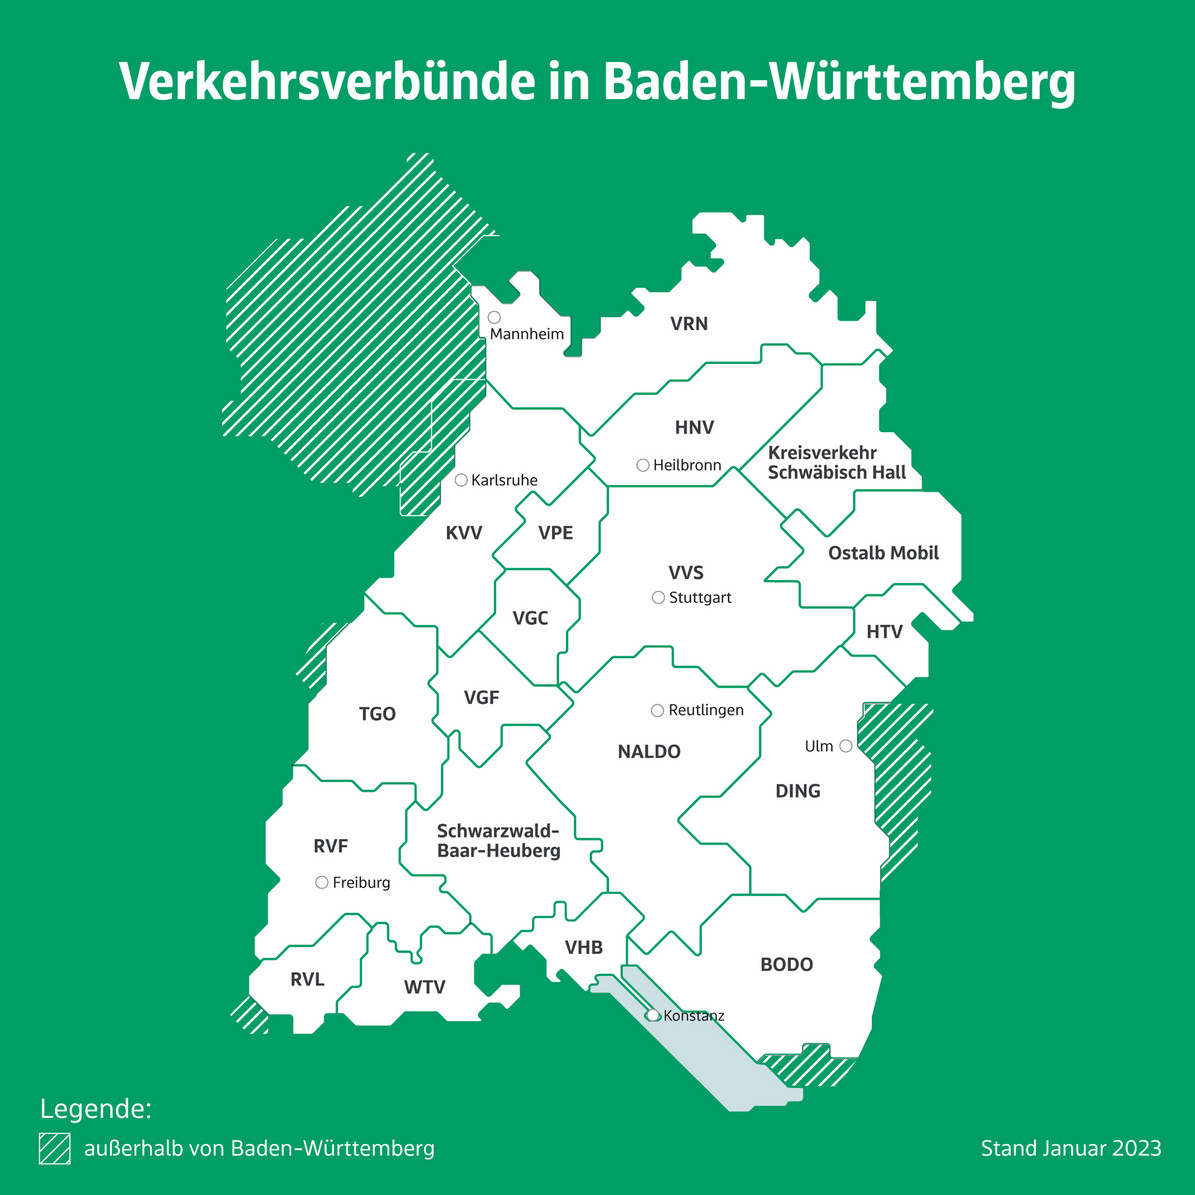 Karte von Baden-Württemberg mit den Grenzen der 19 Verkehrsverbünde.